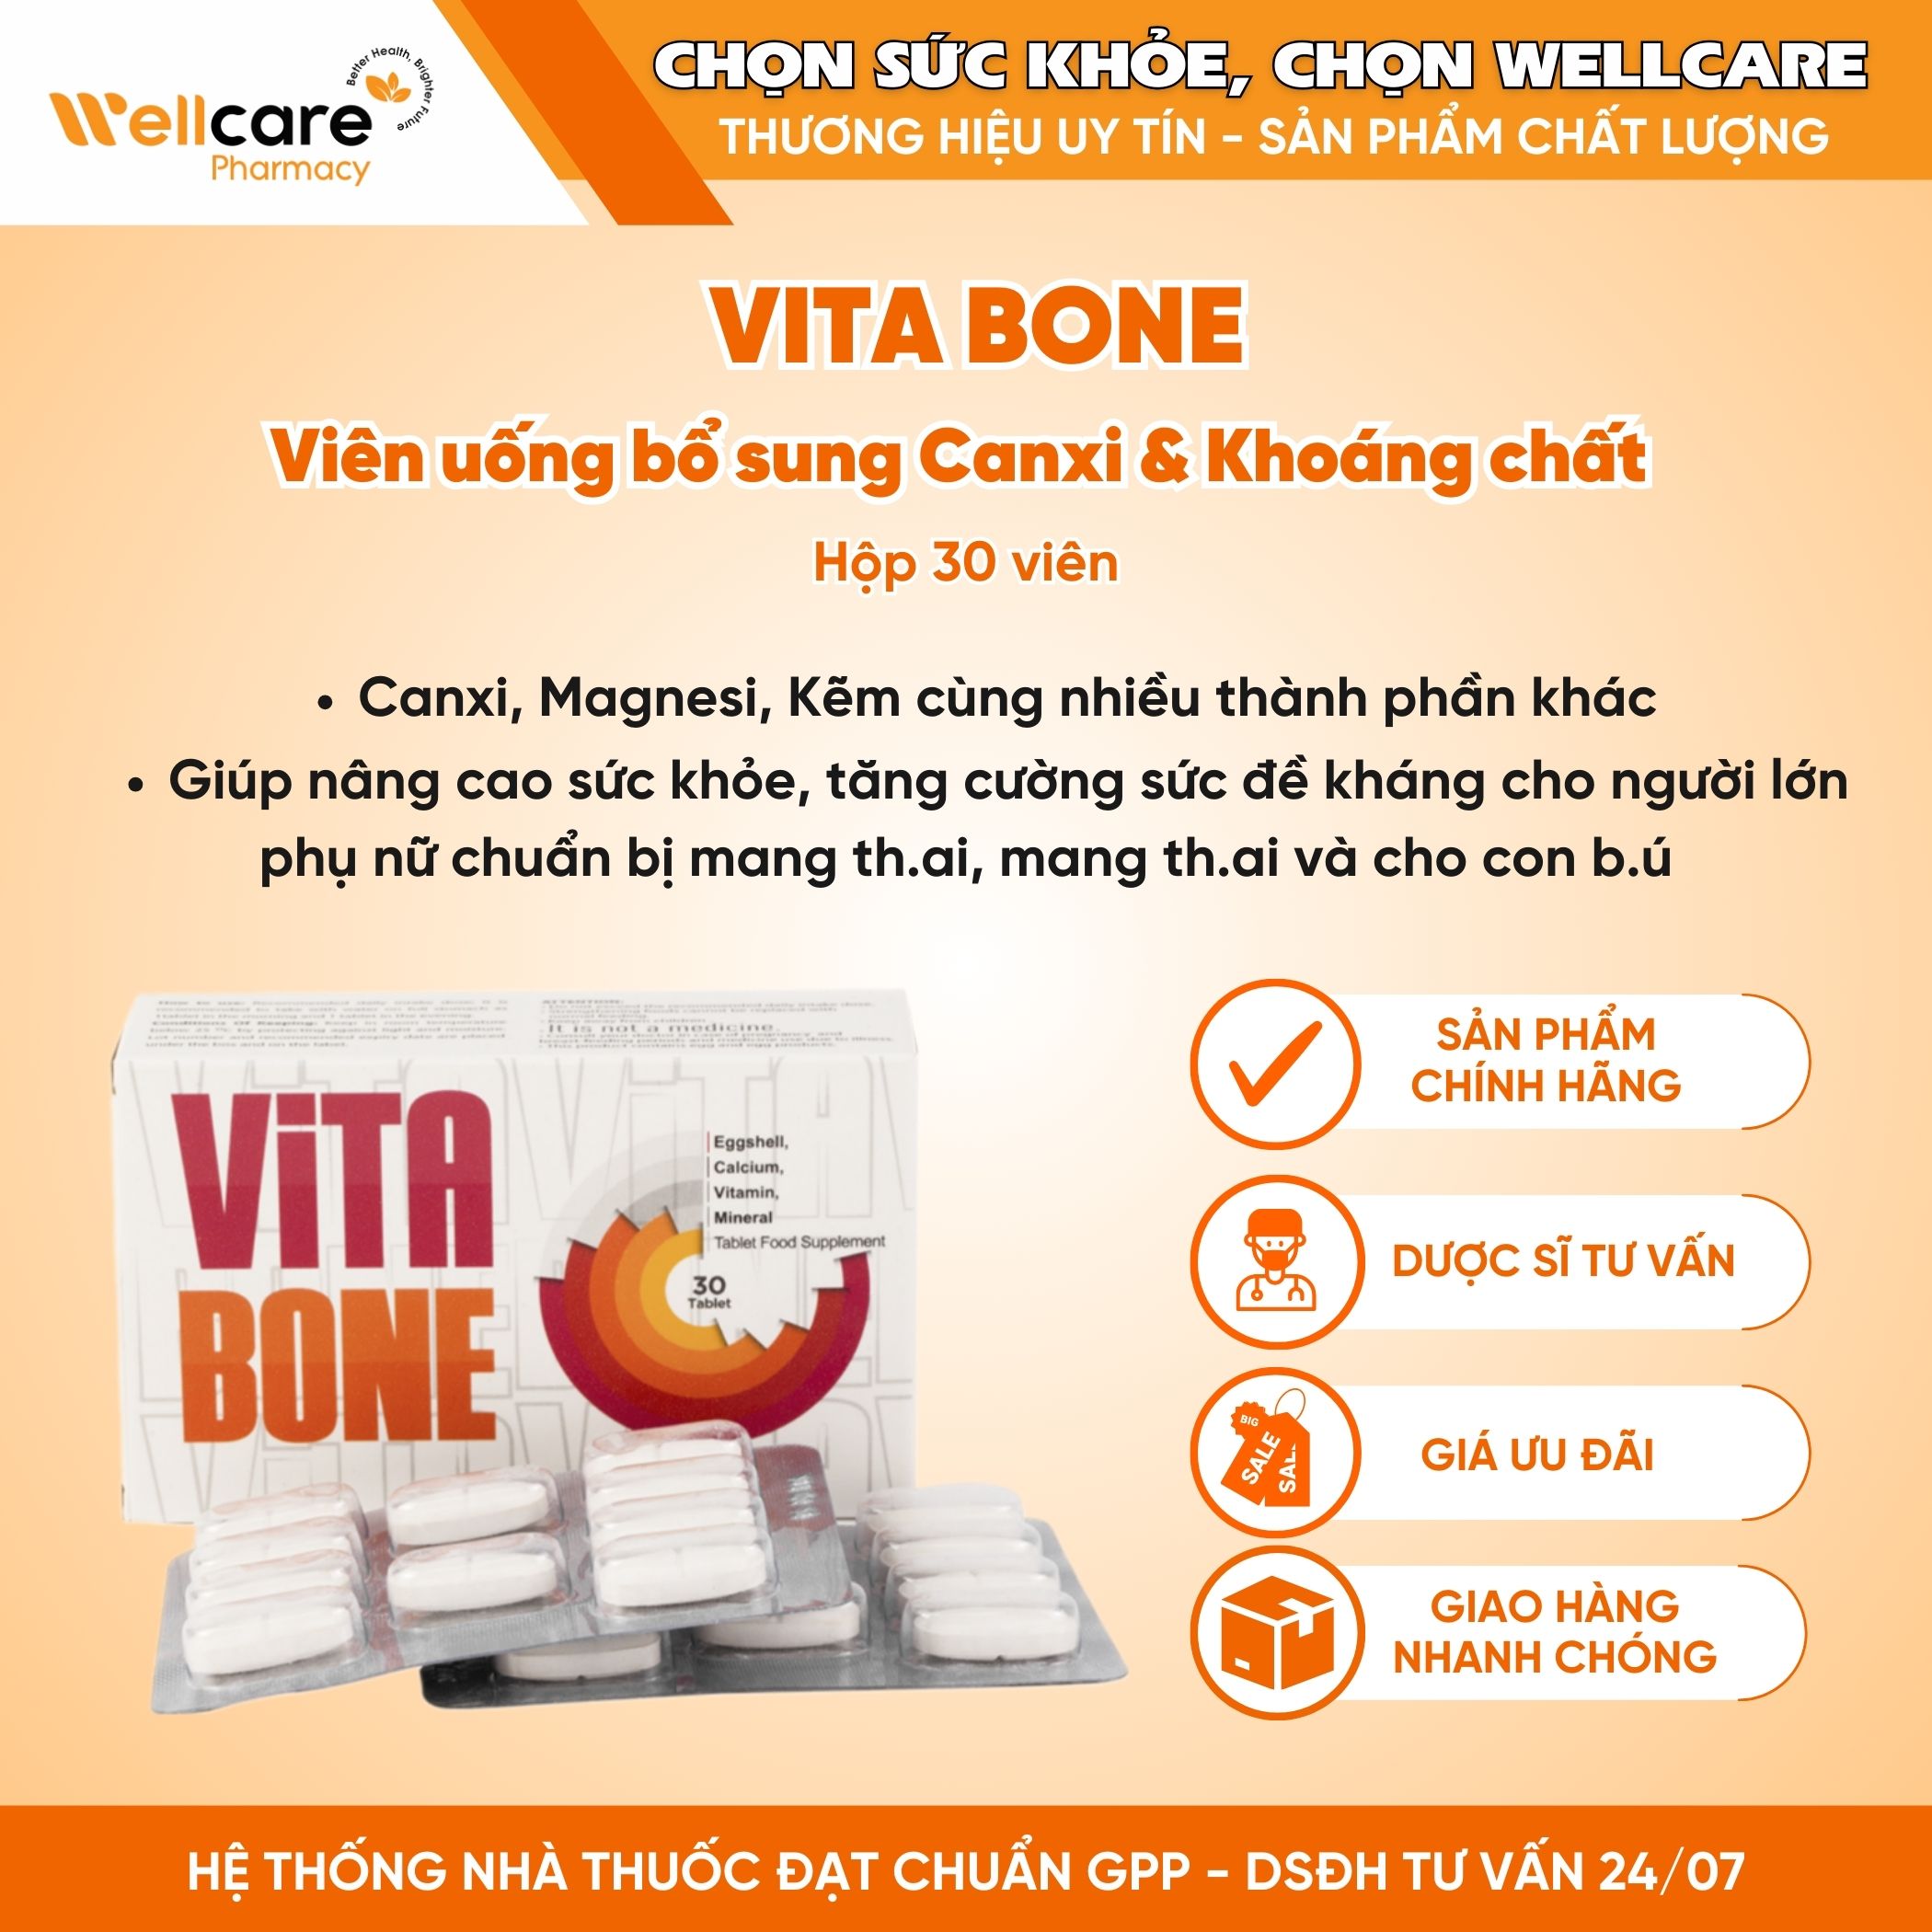 Vitabone – Cung cấp Calci, Vitamin, Khoáng chất (Hộp 3 vỉ x 10 viên)